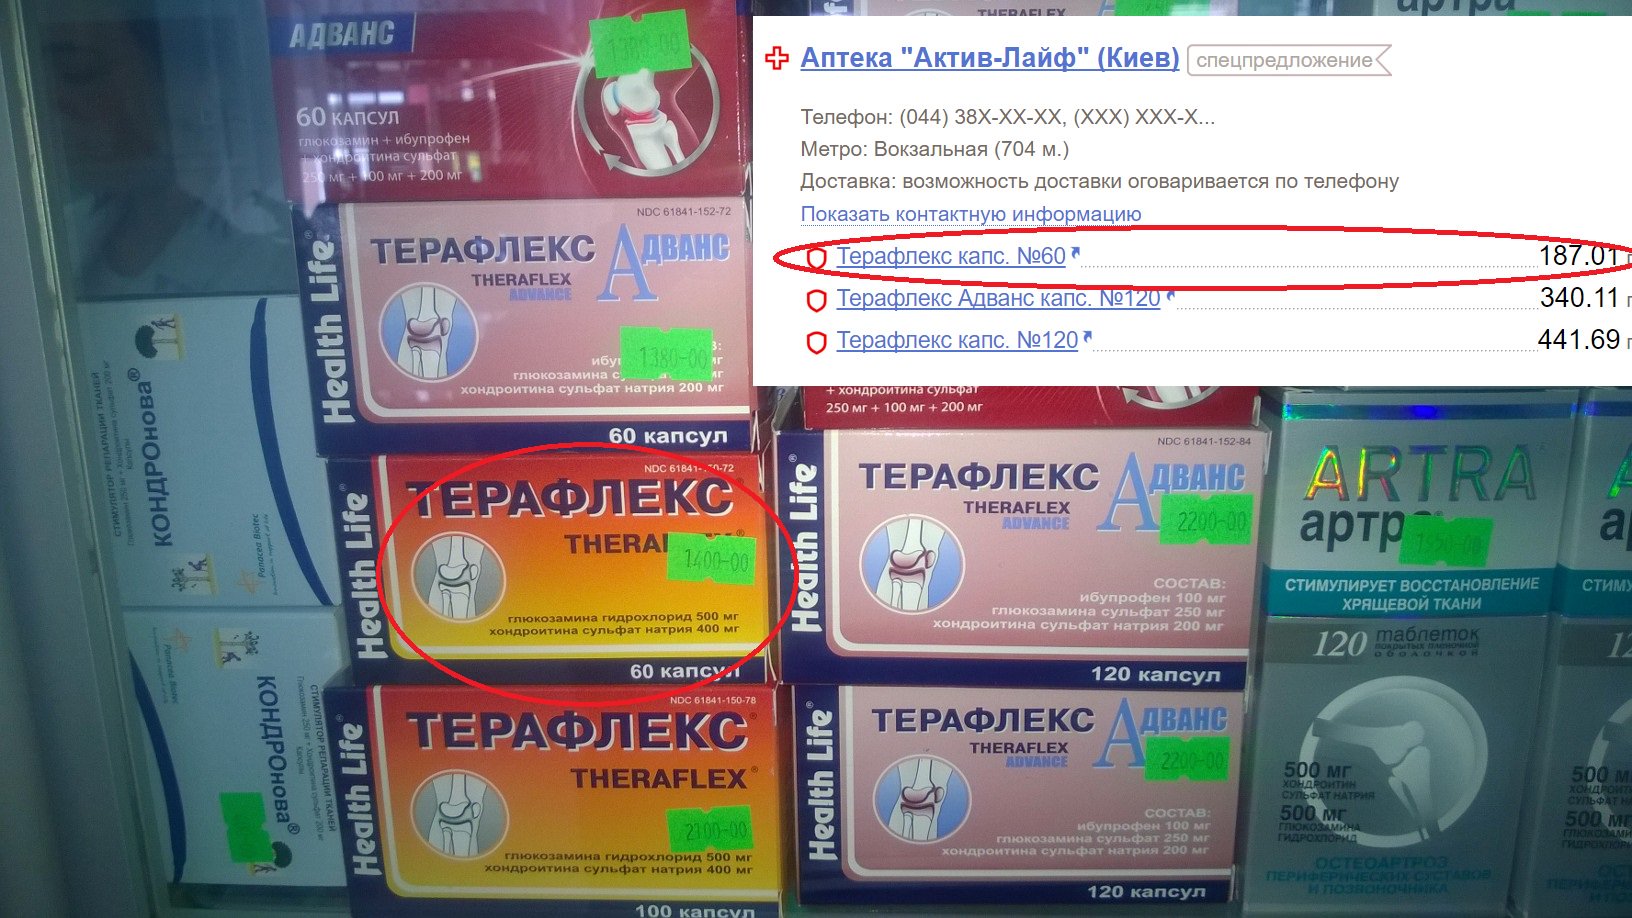 Сайт аптек сравнить цены. Сетевые аптеки Крыма. Сравни аптеки. Сравни цены в аптеках. Сравнить цены в аптеках.